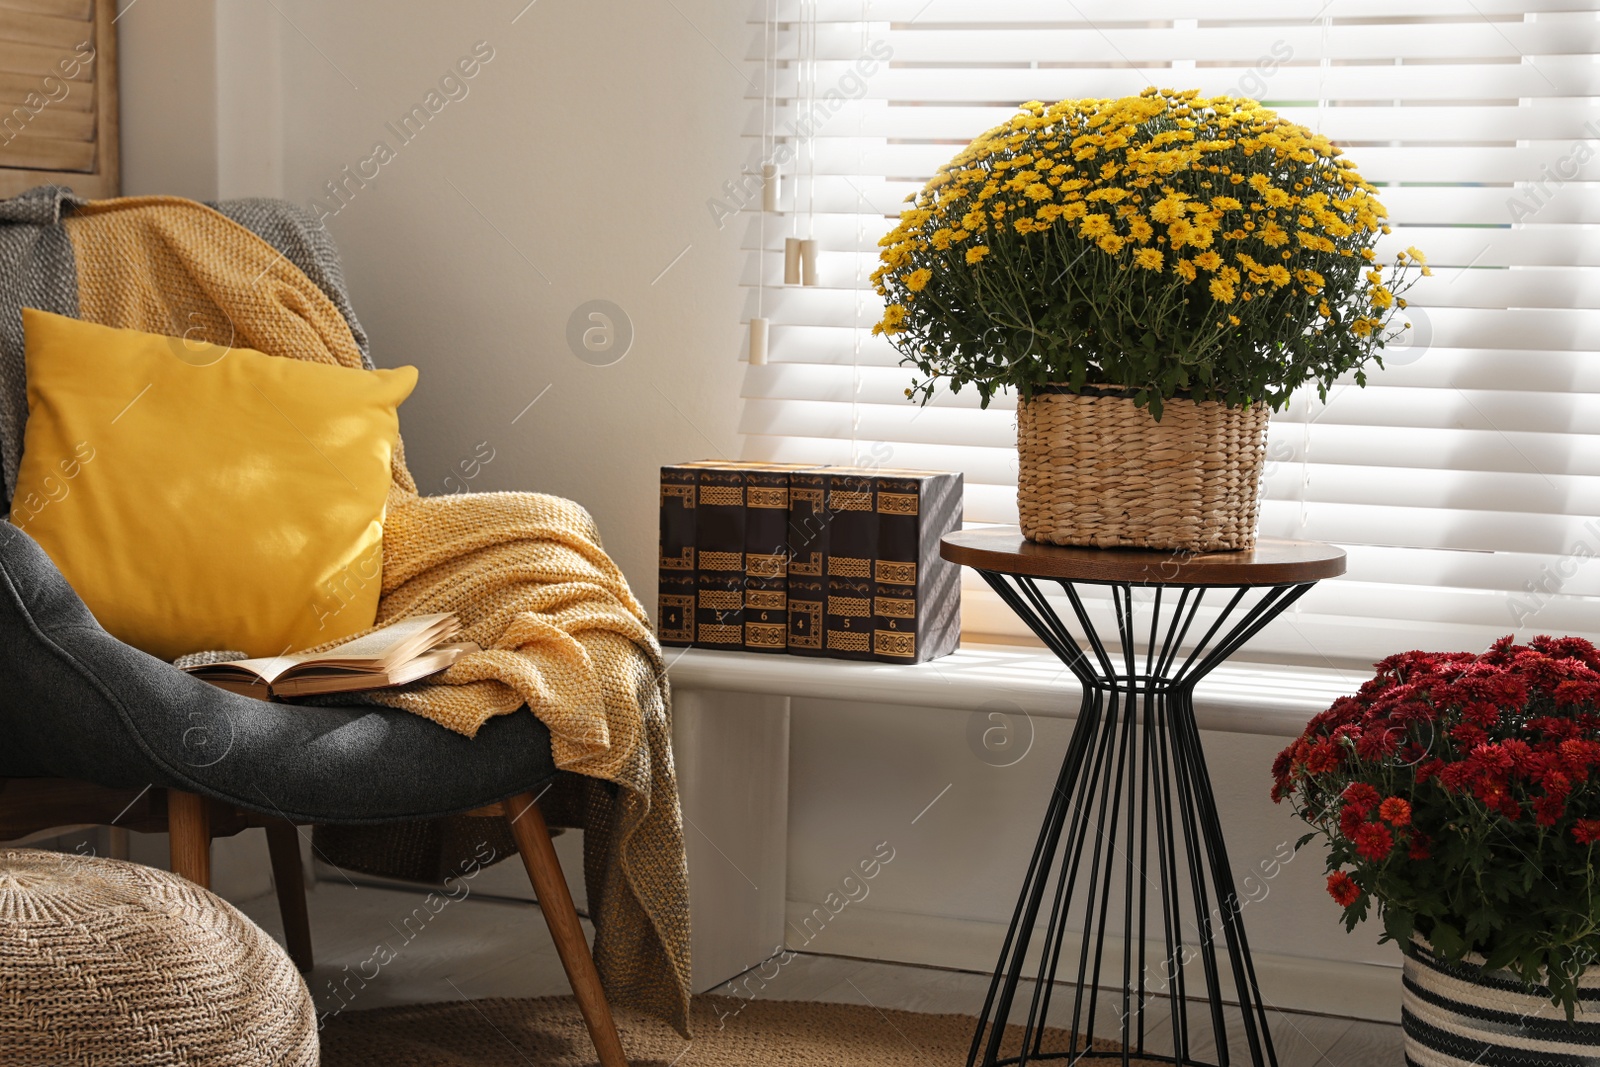 Photo of Stylish room interior with beautiful fresh chrysanthemum flowers